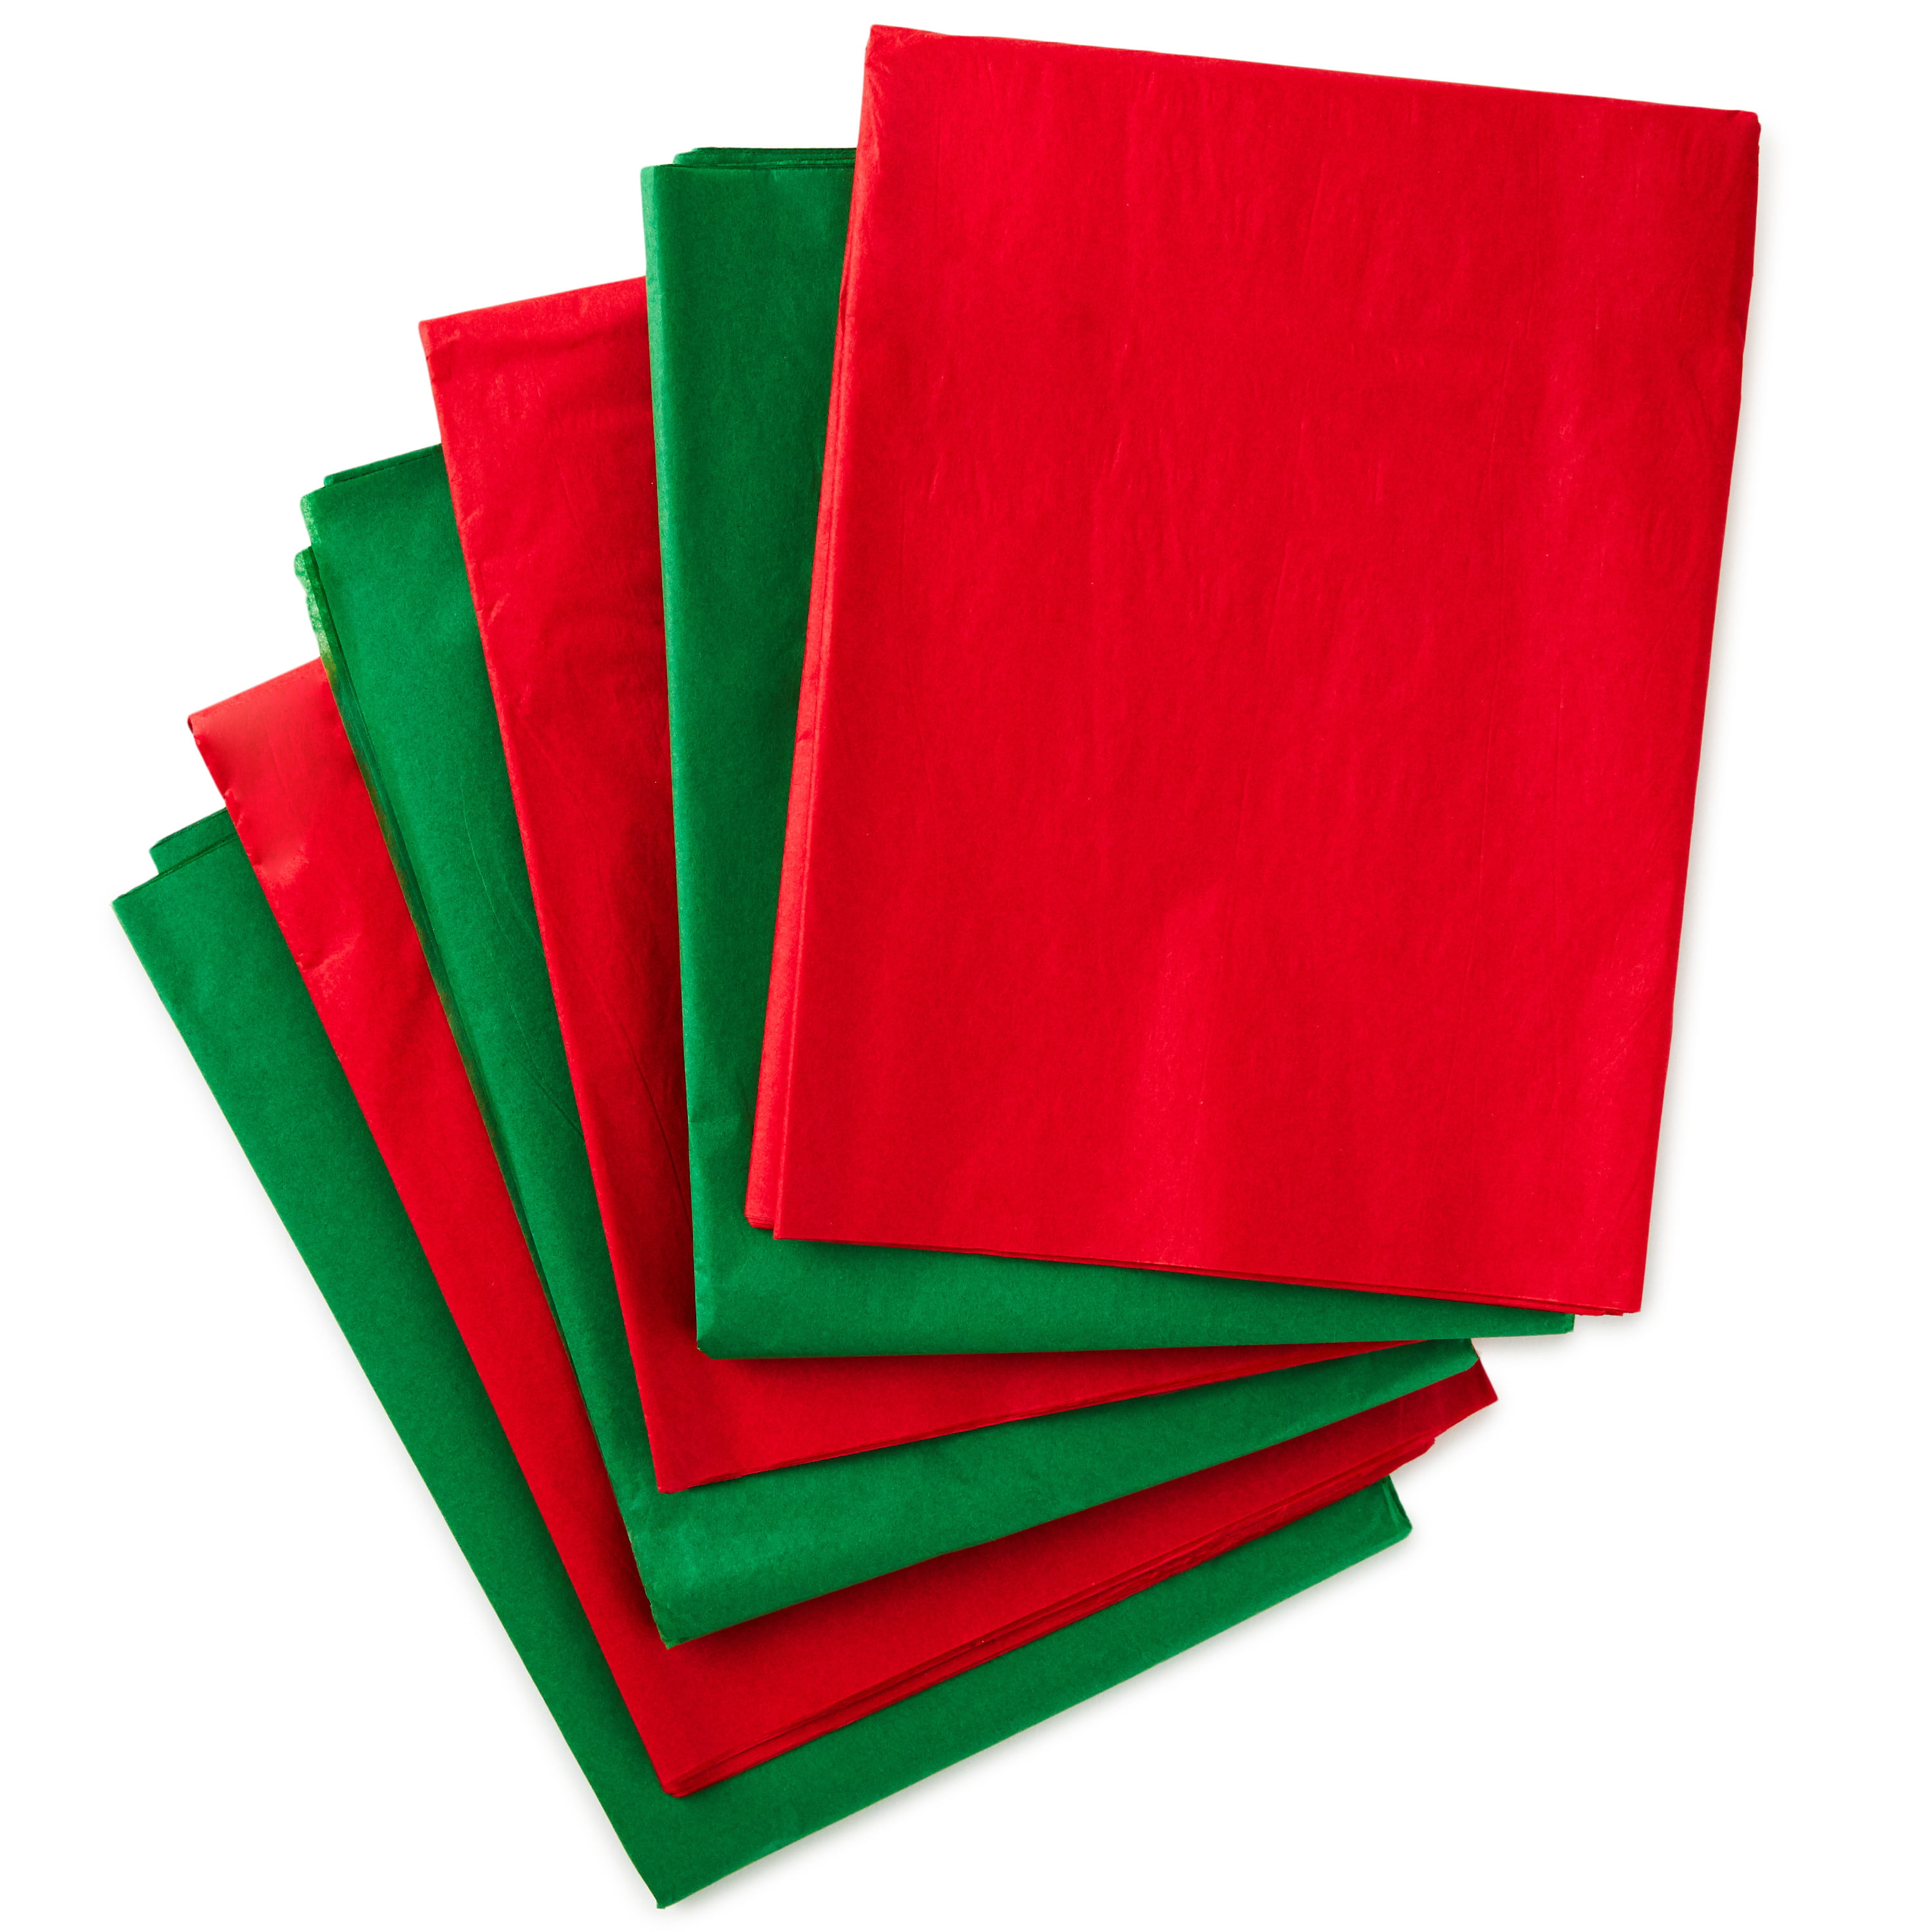 Hallmark : Dark Orange/Coral/Light Pink 3-Pack Tissue Paper, 12 sheets